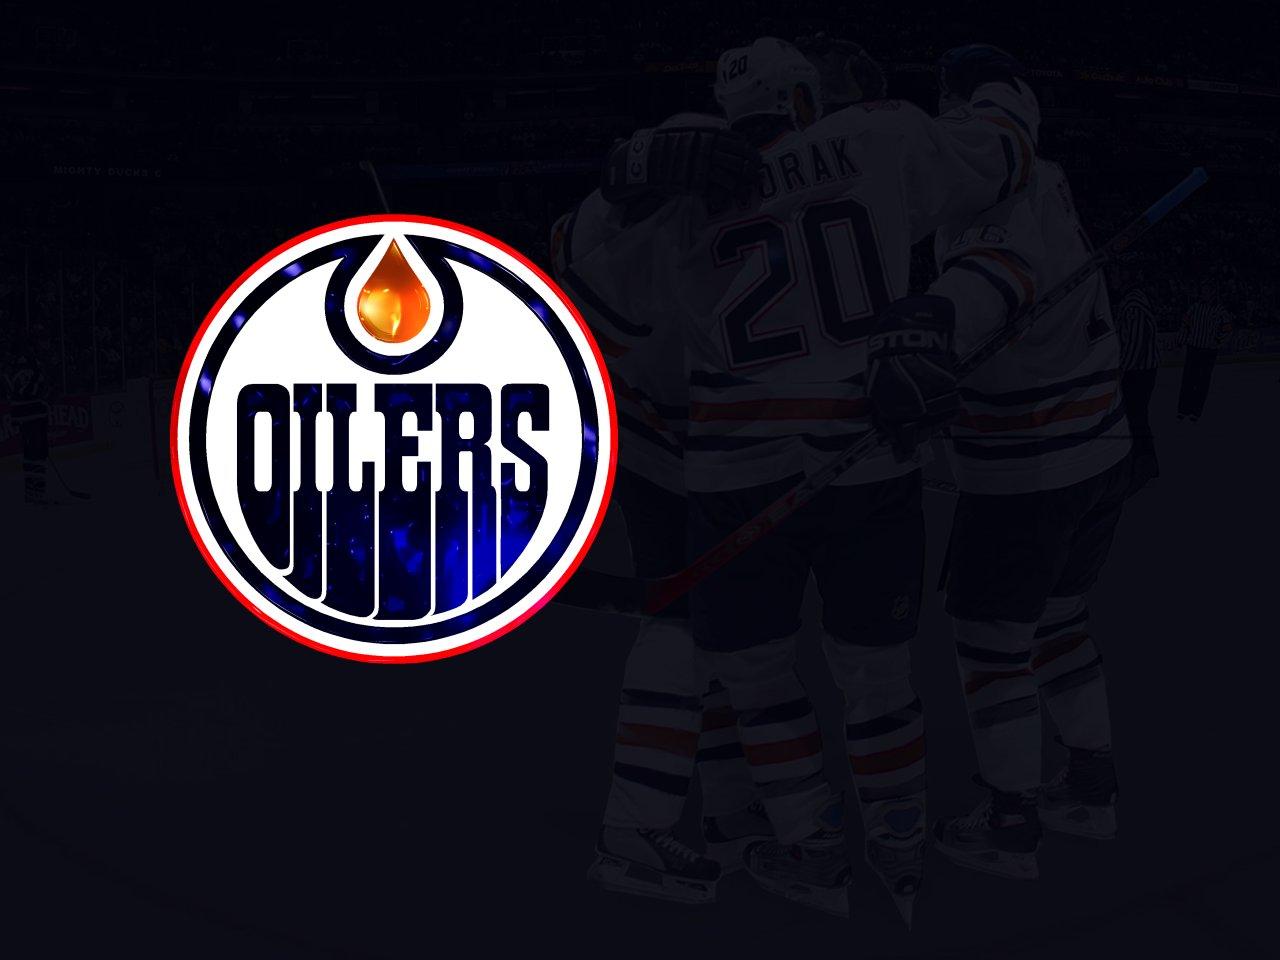 Oilers Wallpaper. NHL Oilers Wallpaper